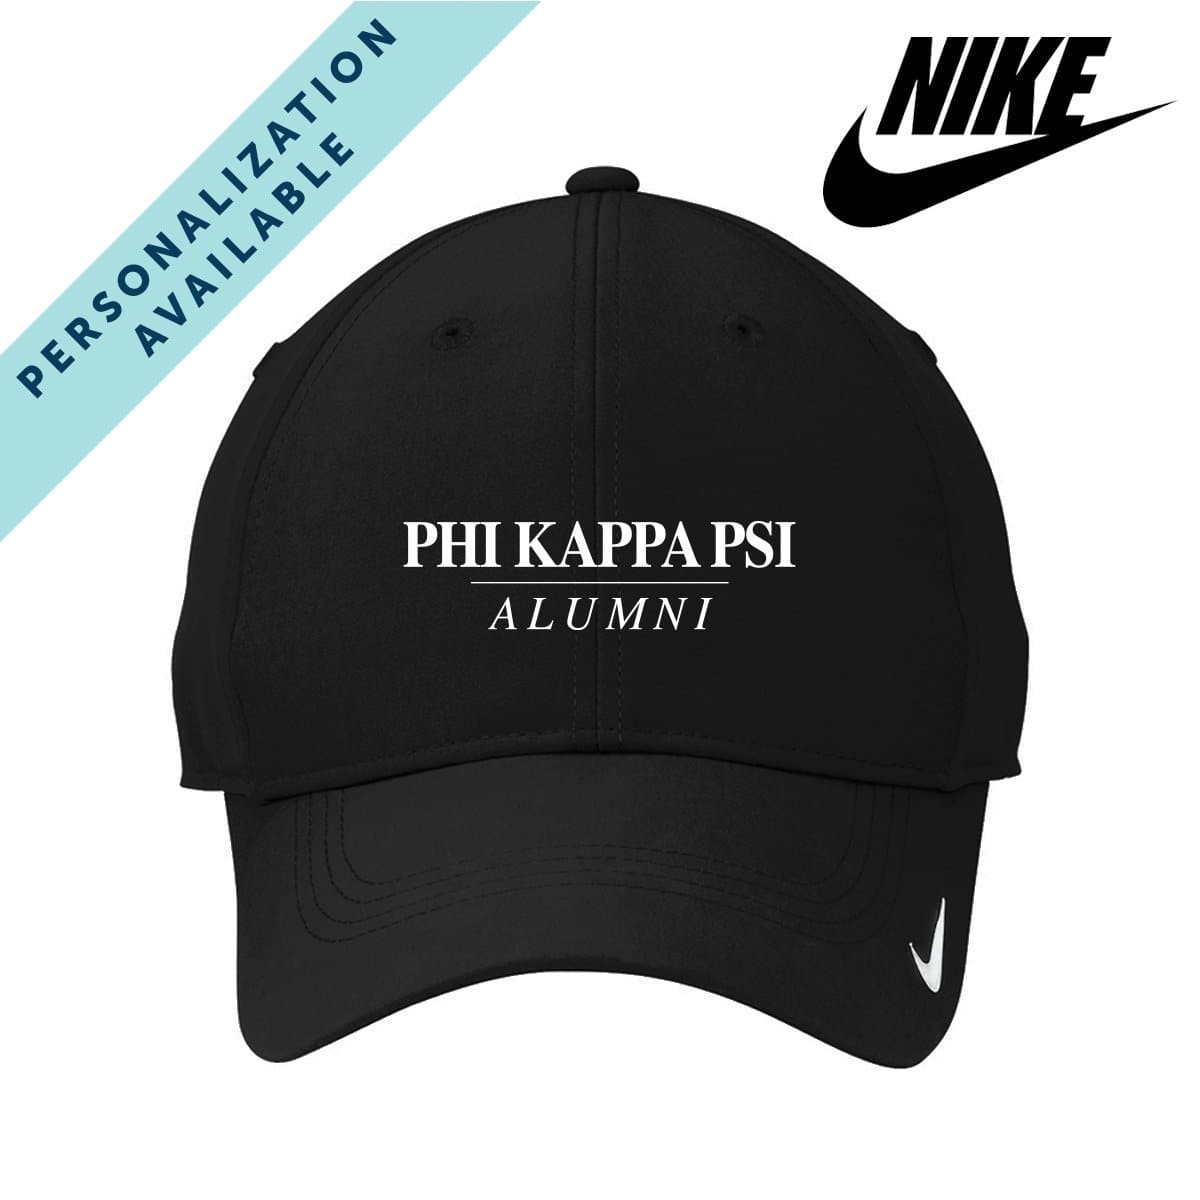 Phi Psi Alumni Nike Dri-FIT Performance Hat | Phi Kappa Psi | Headwear > Billed hats